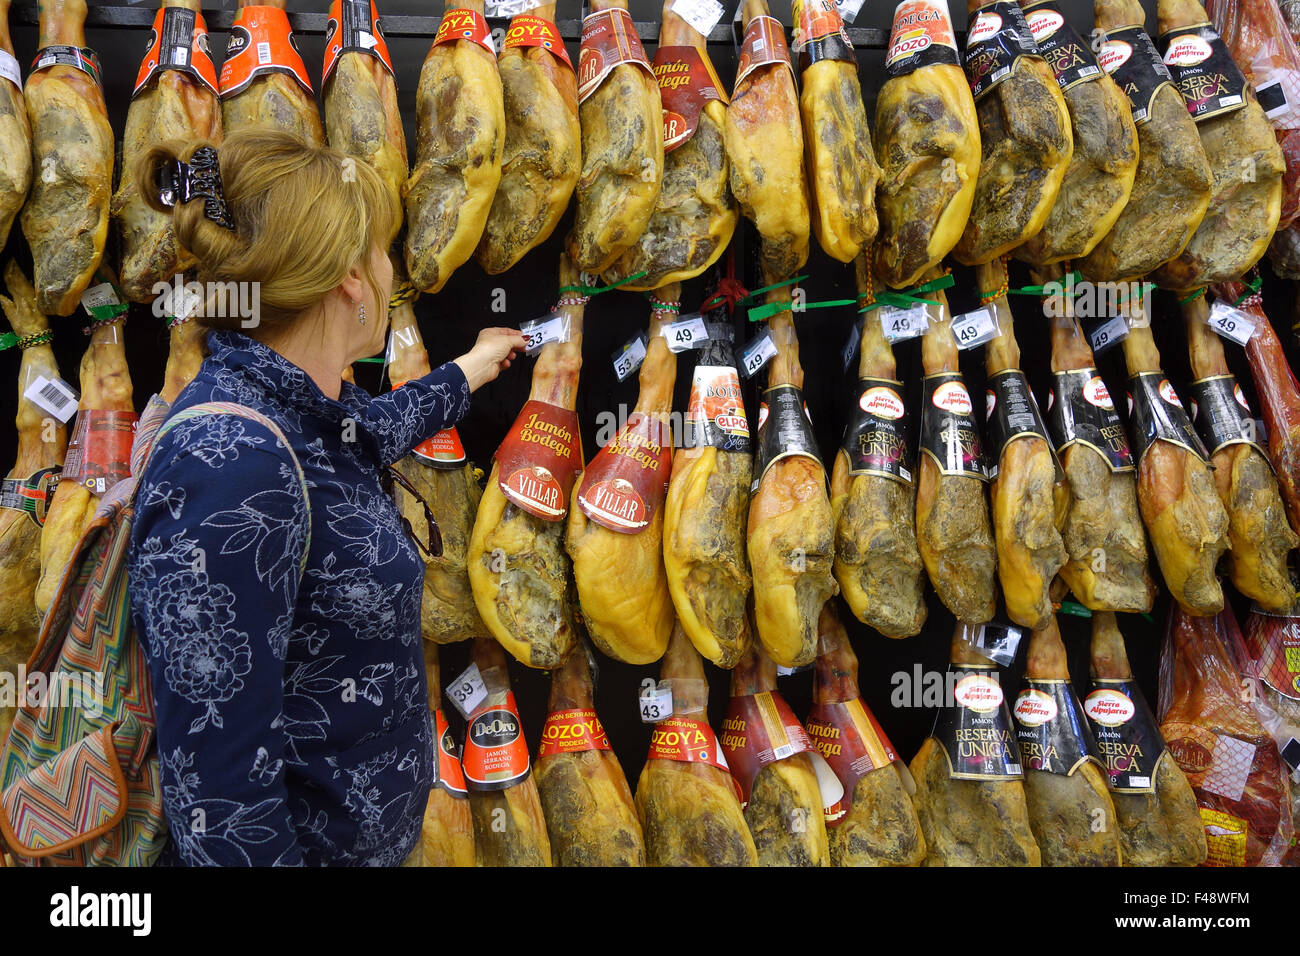 Mujer shopper compras comprar jamones ibéricos Jamon Iberico el jamón ibérico colgando en España supermercado Foto de stock